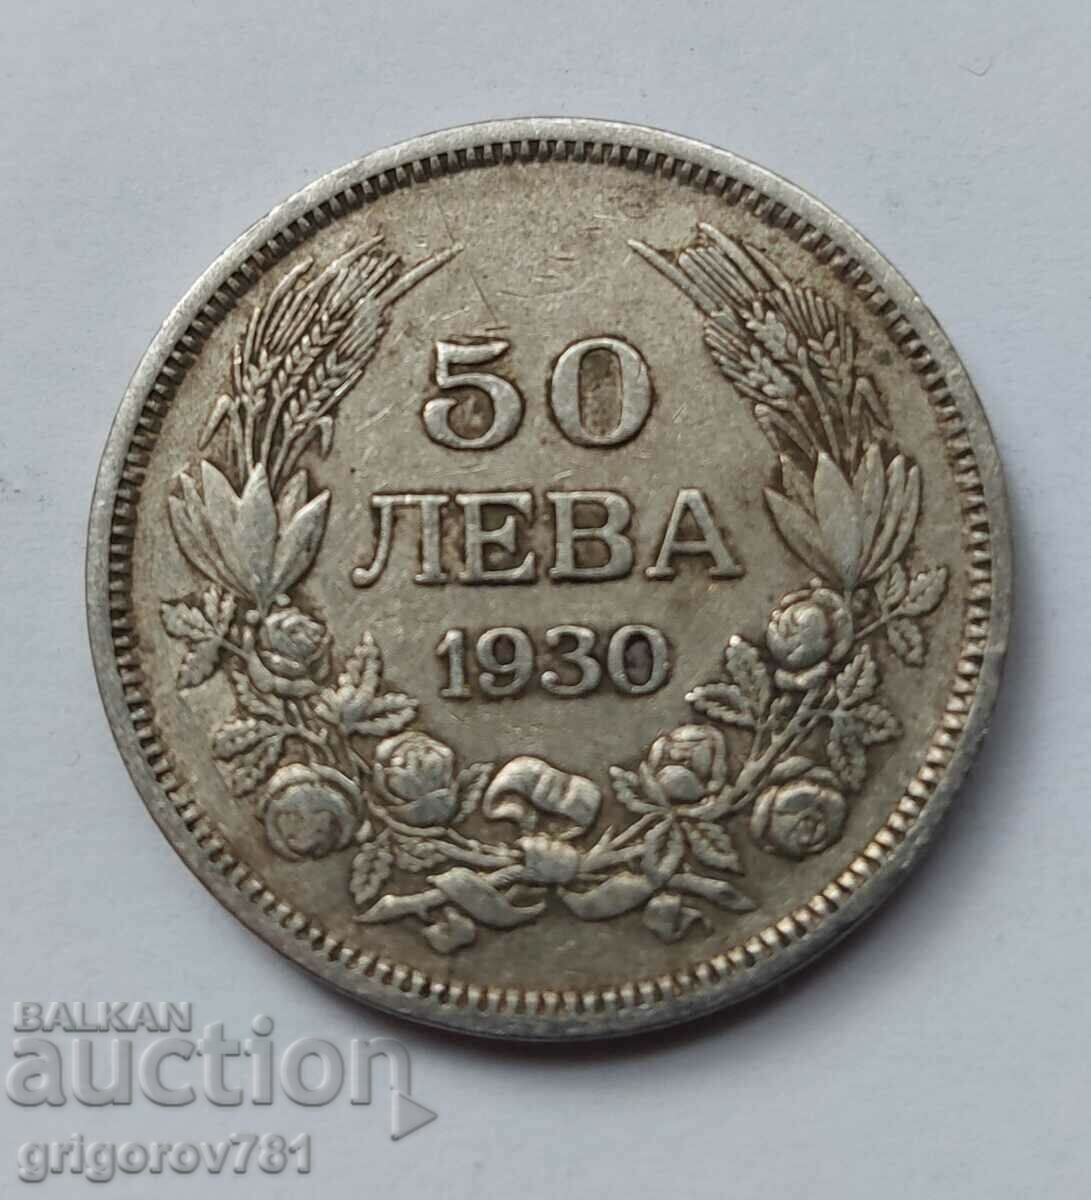 50 leva silver Bulgaria 1930 - silver coin #59